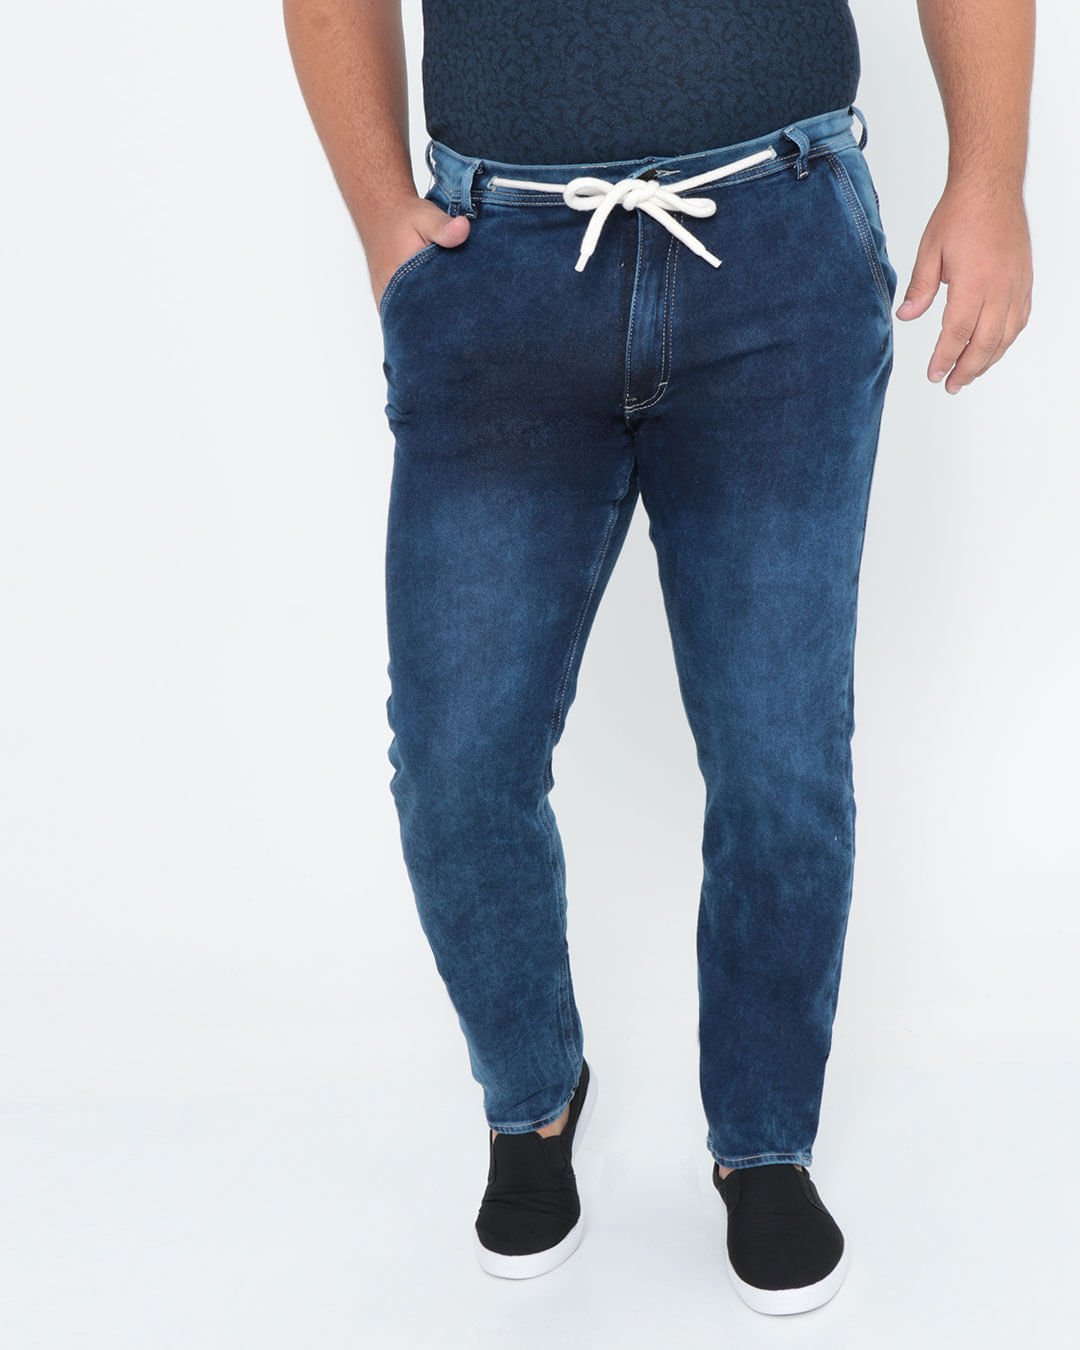 Calca-Jeans-Moleton-Masculina-Plus-Size-Marmorizado-Azul